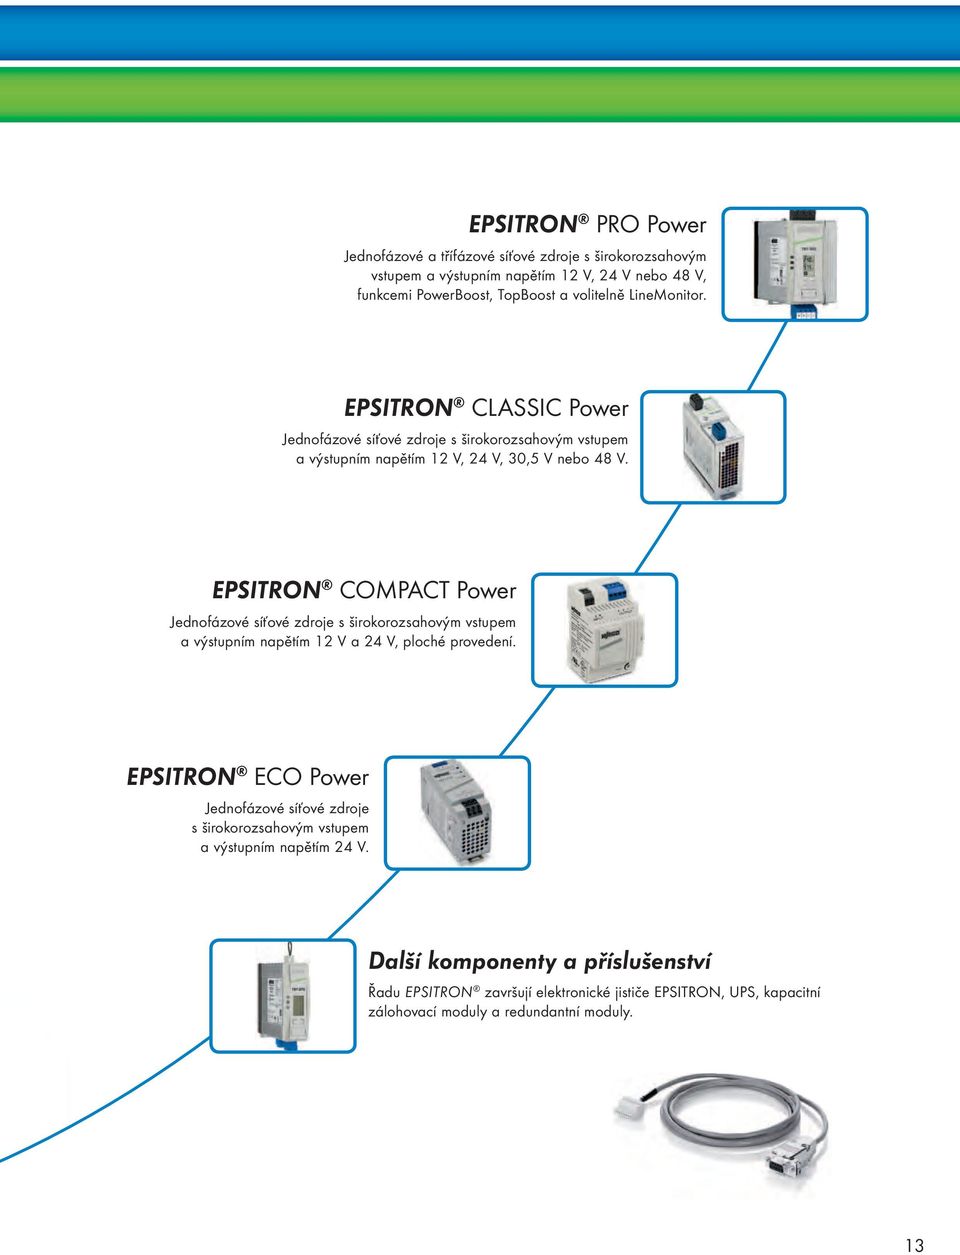 EPSITRON COMPACT Power Jednofázové síťové zdroje s širokorozsahovým vstupem a výstupním napětím V a 4 V, ploché provedení.